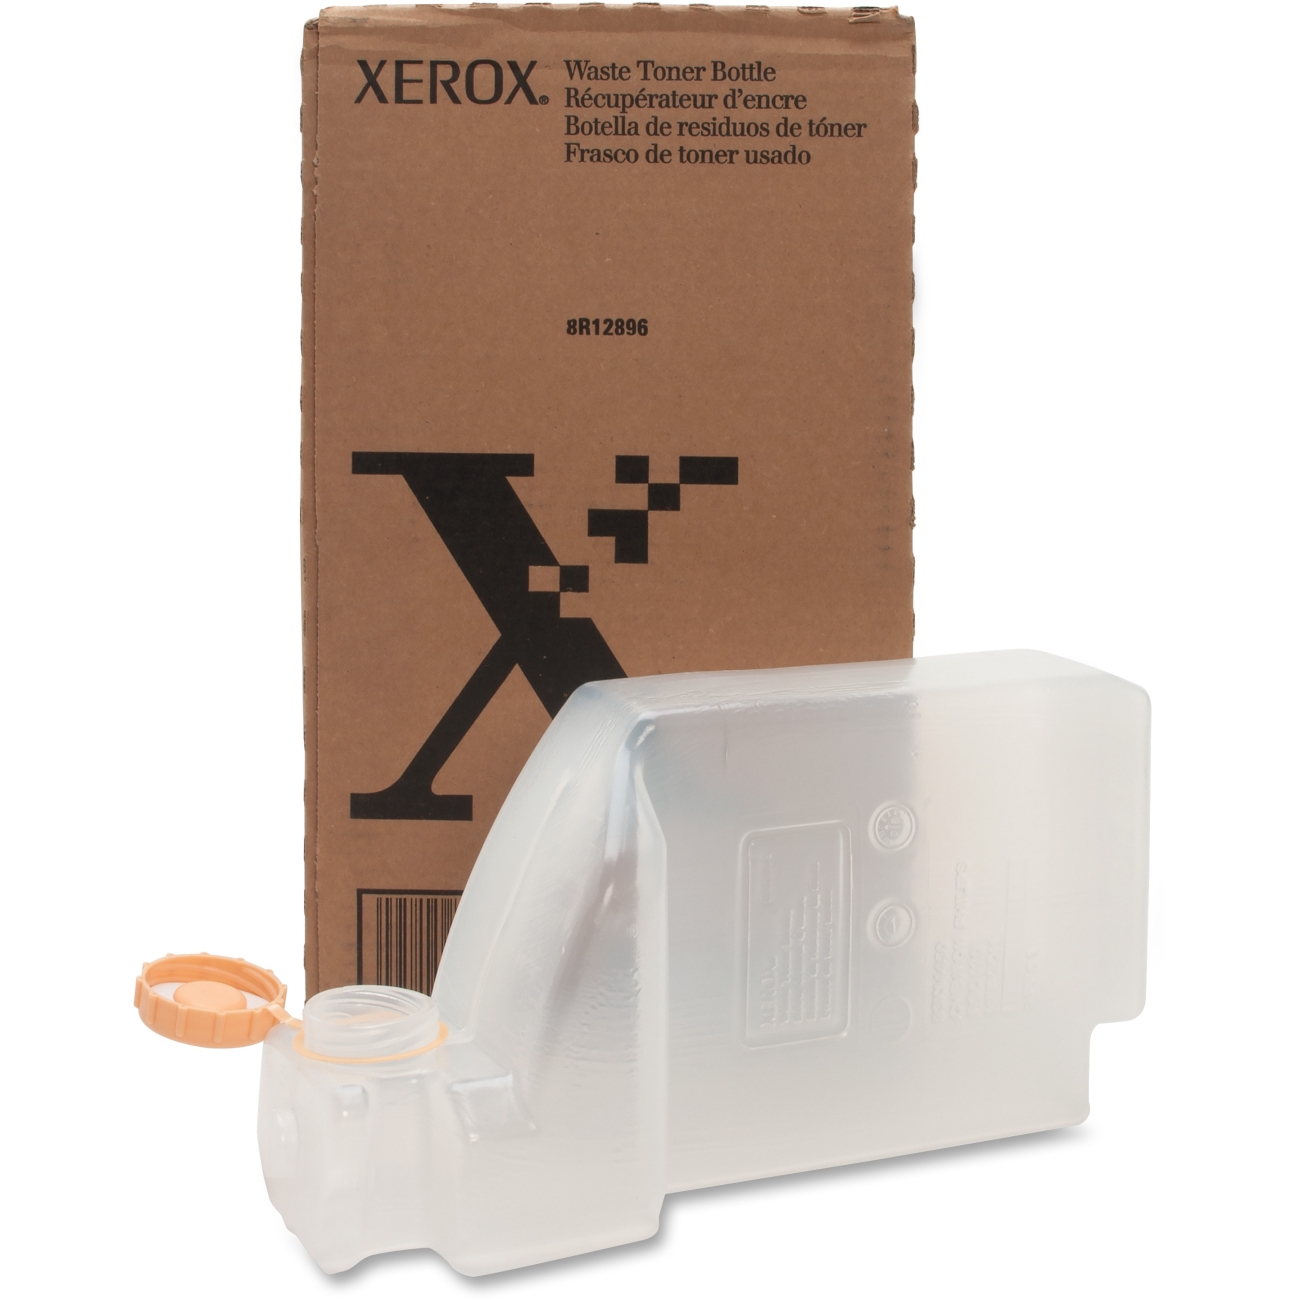 Контейнер для отработанного тонера (Waste Cartridge) Xerox [ 008R12896 ] для WC Pro 35/45/55, DC 535/545/555